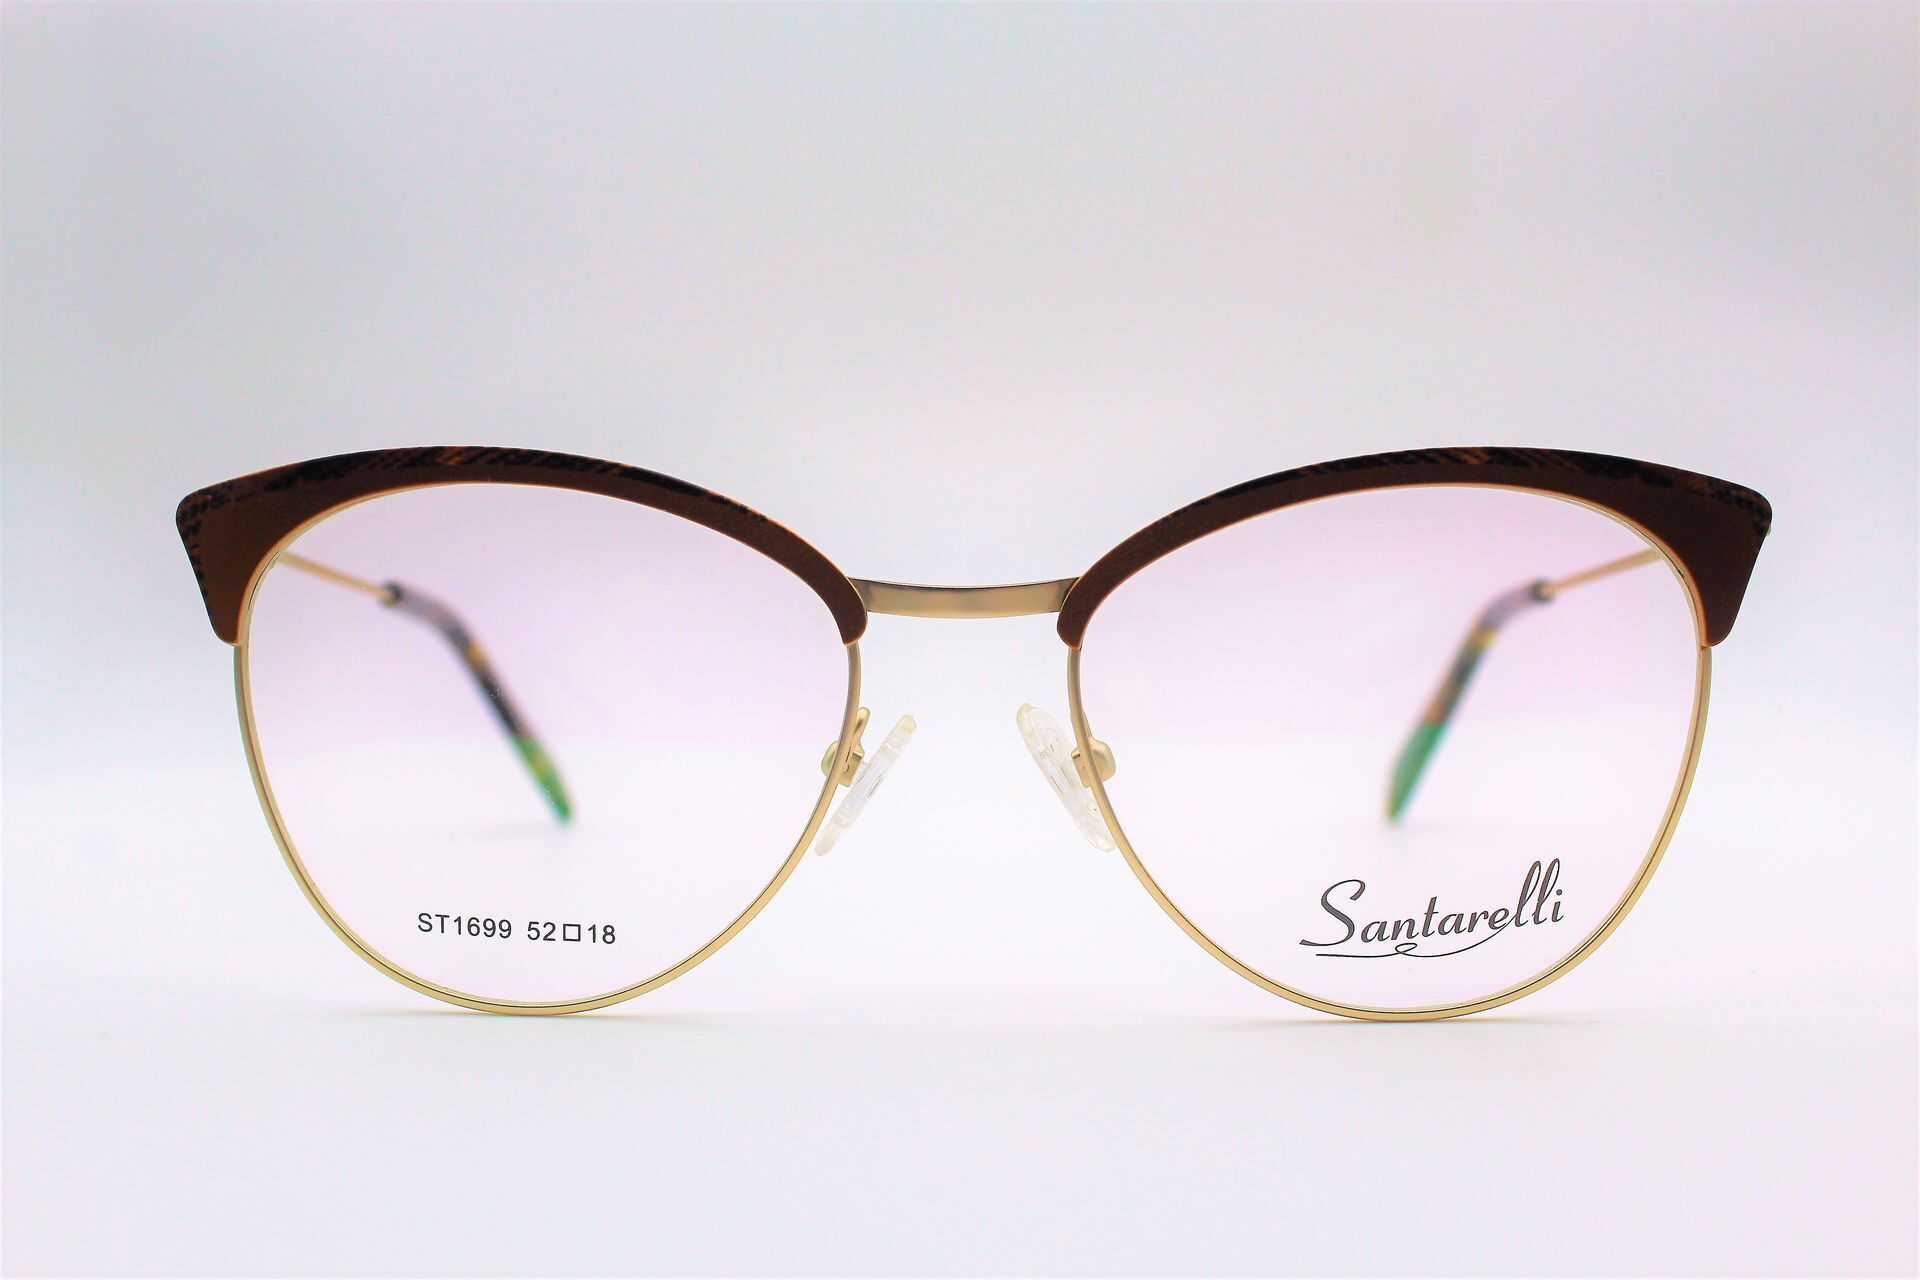 Santarelli 2181-6 очки. 1967 C2 Santarelli очки. Оправа Santarelli St 1766. Santarelli очки солнцезащитные 9248.